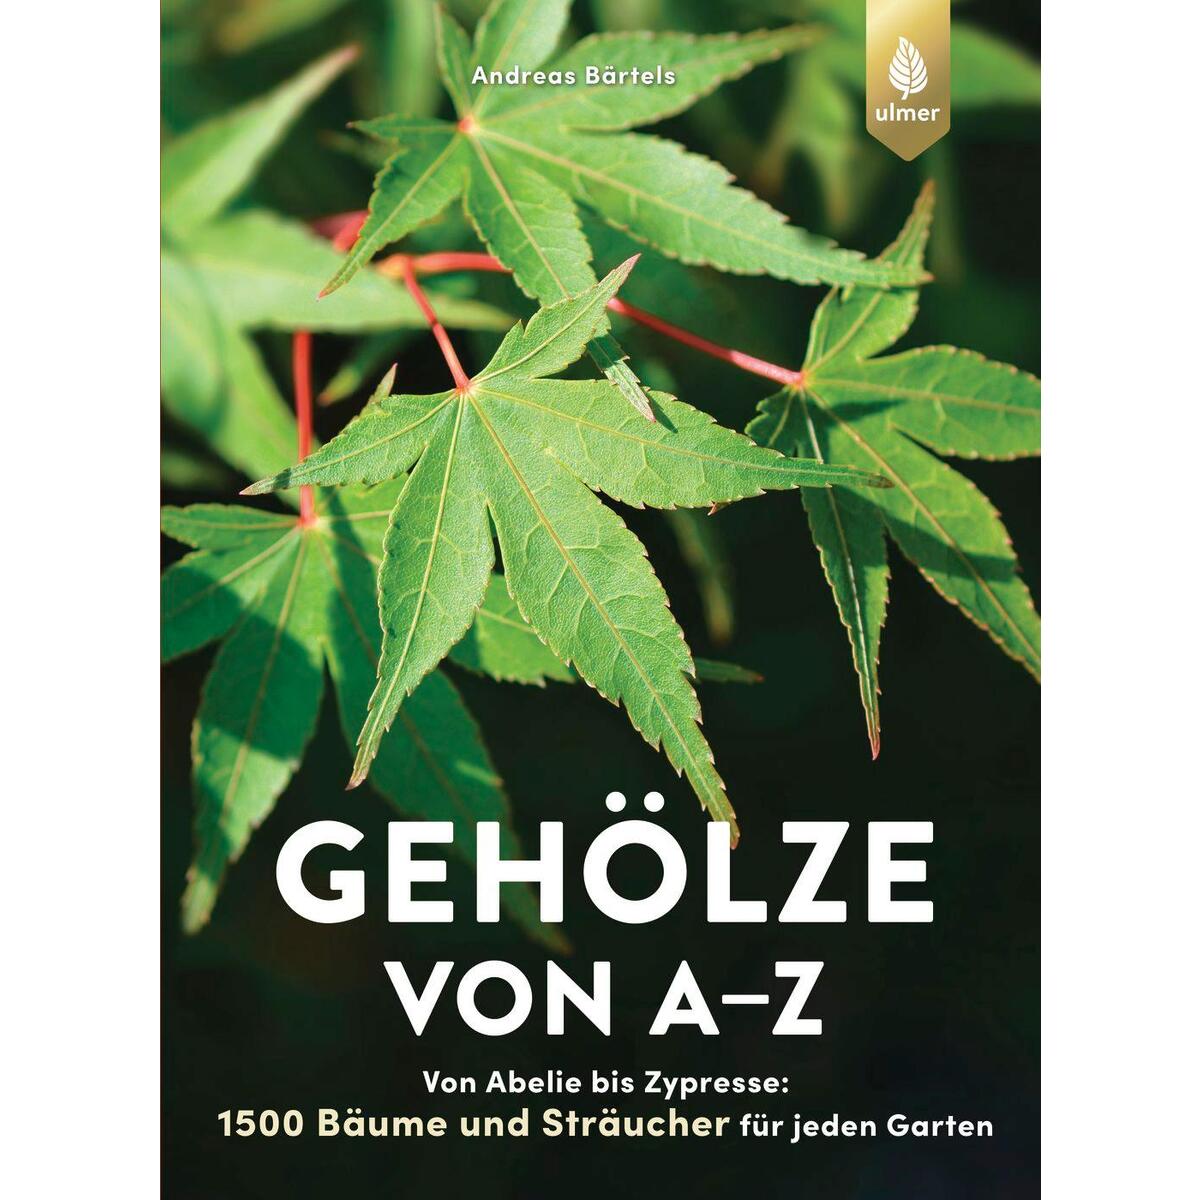 Gehölze von A-Z von Ulmer Eugen Verlag